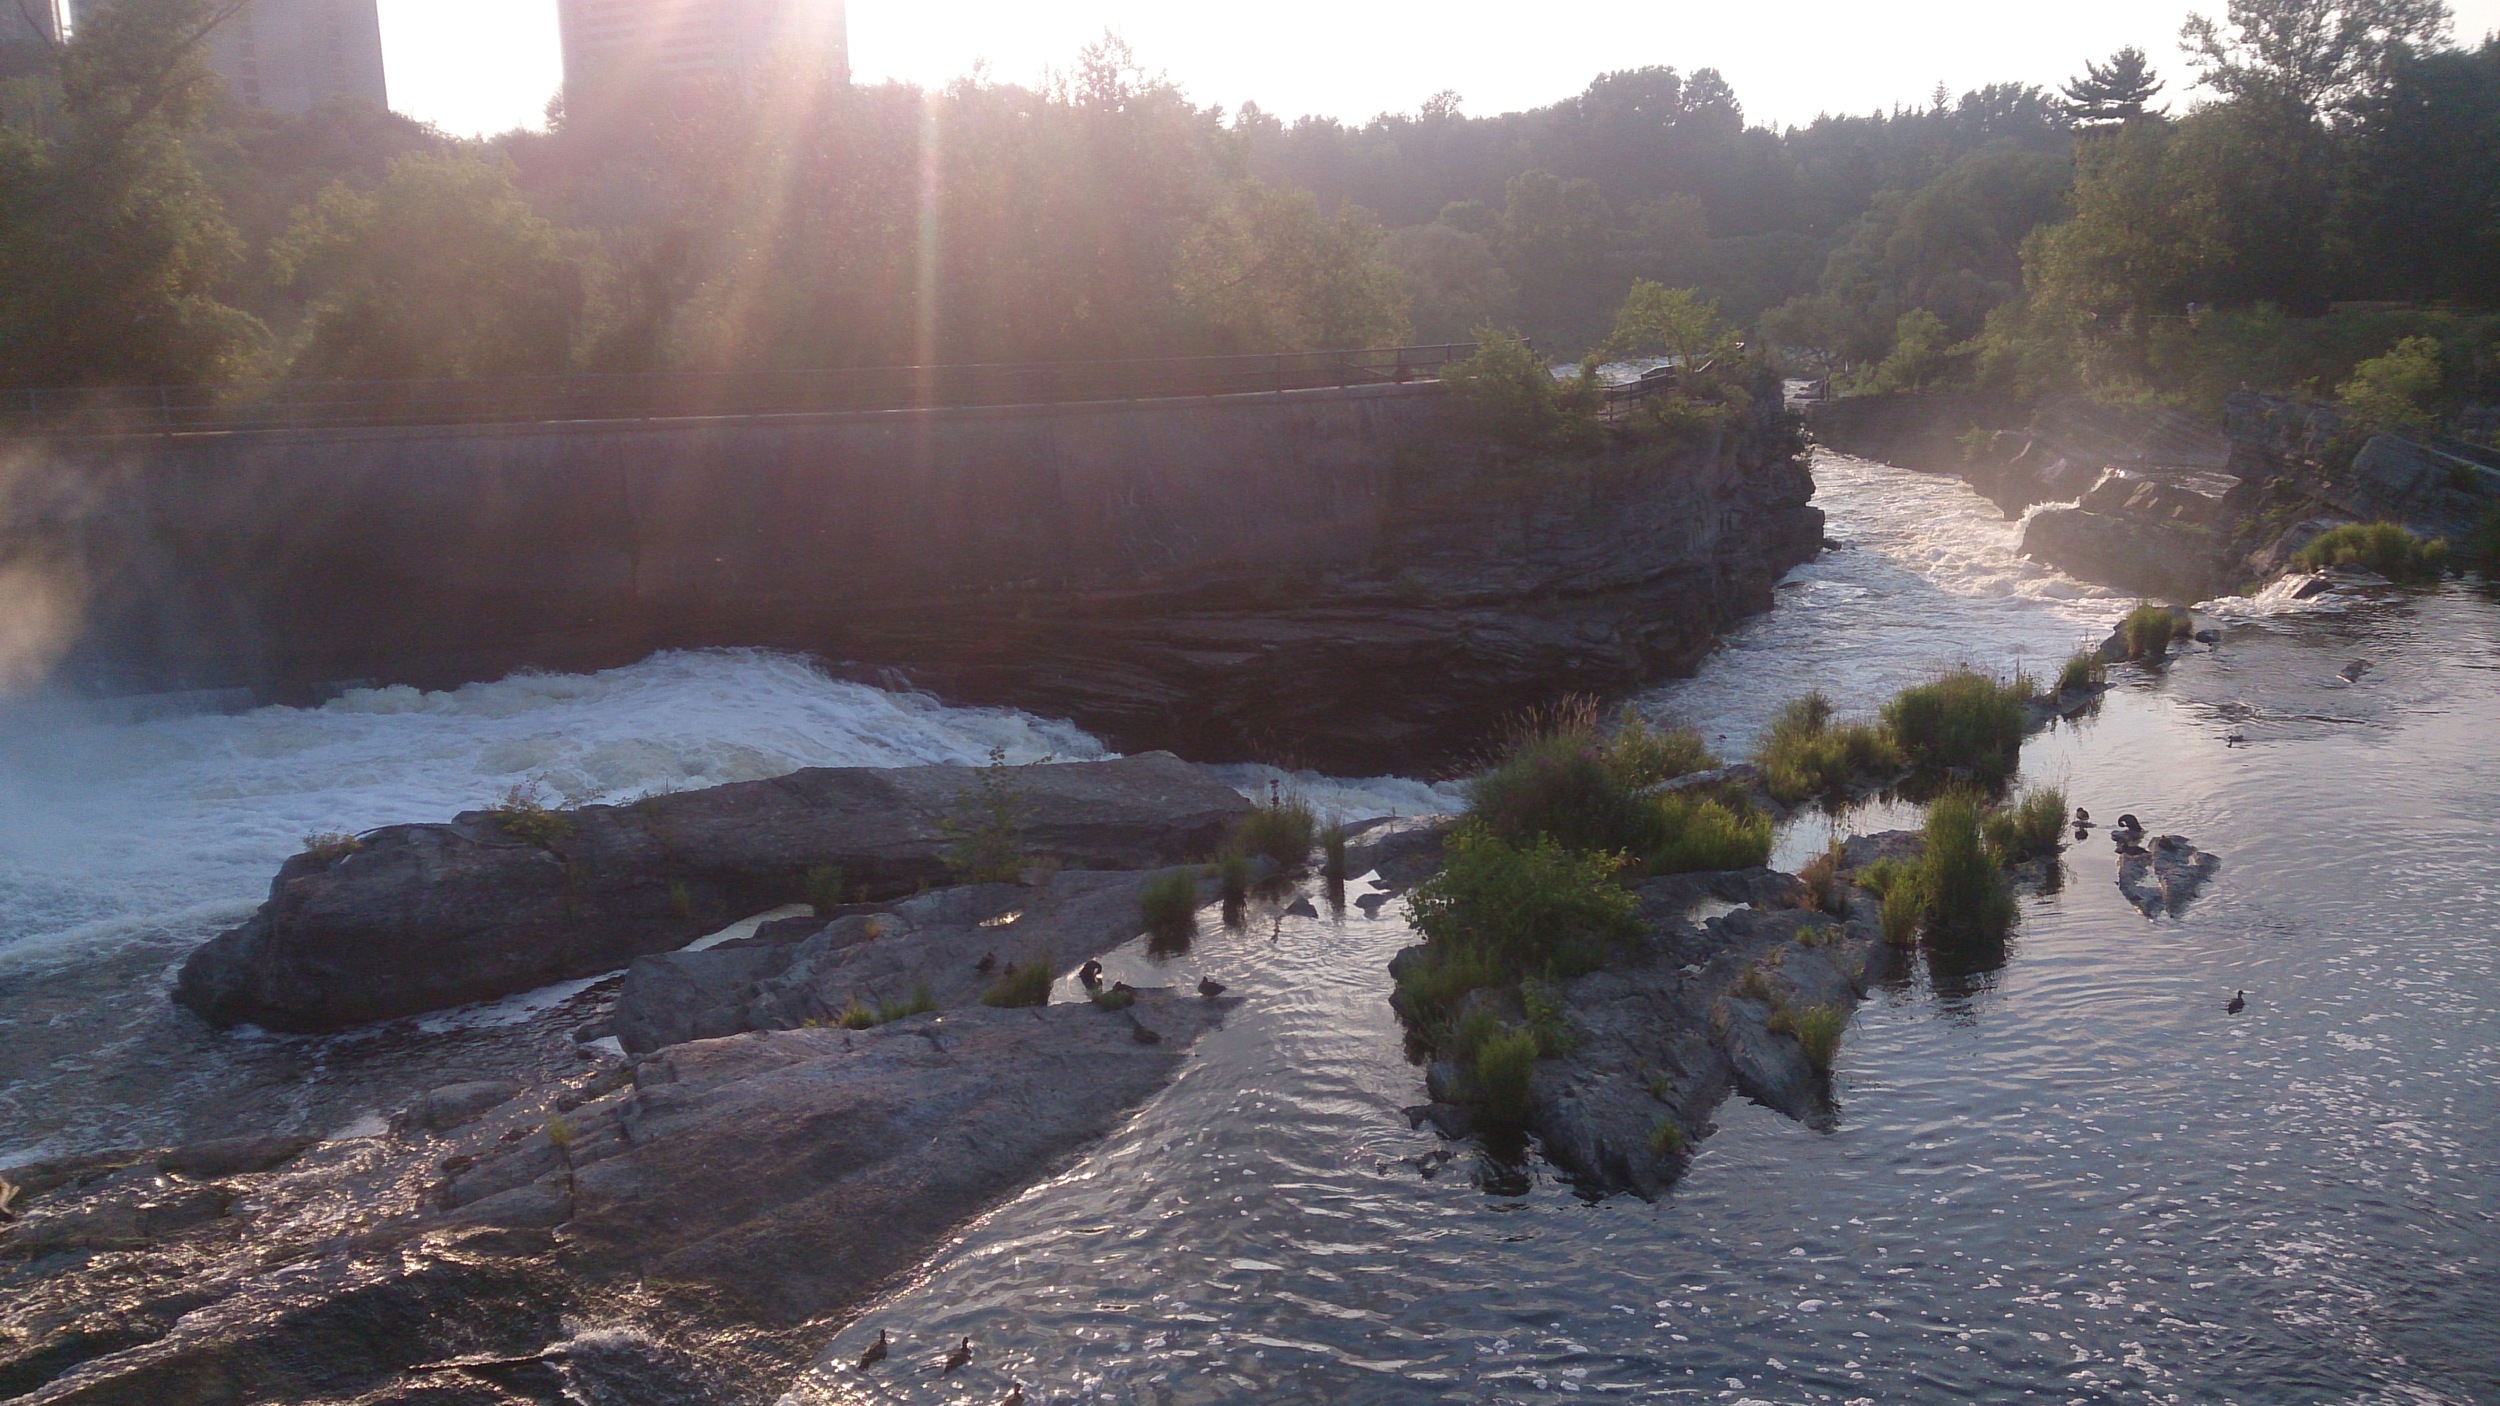 The Rideau Falls